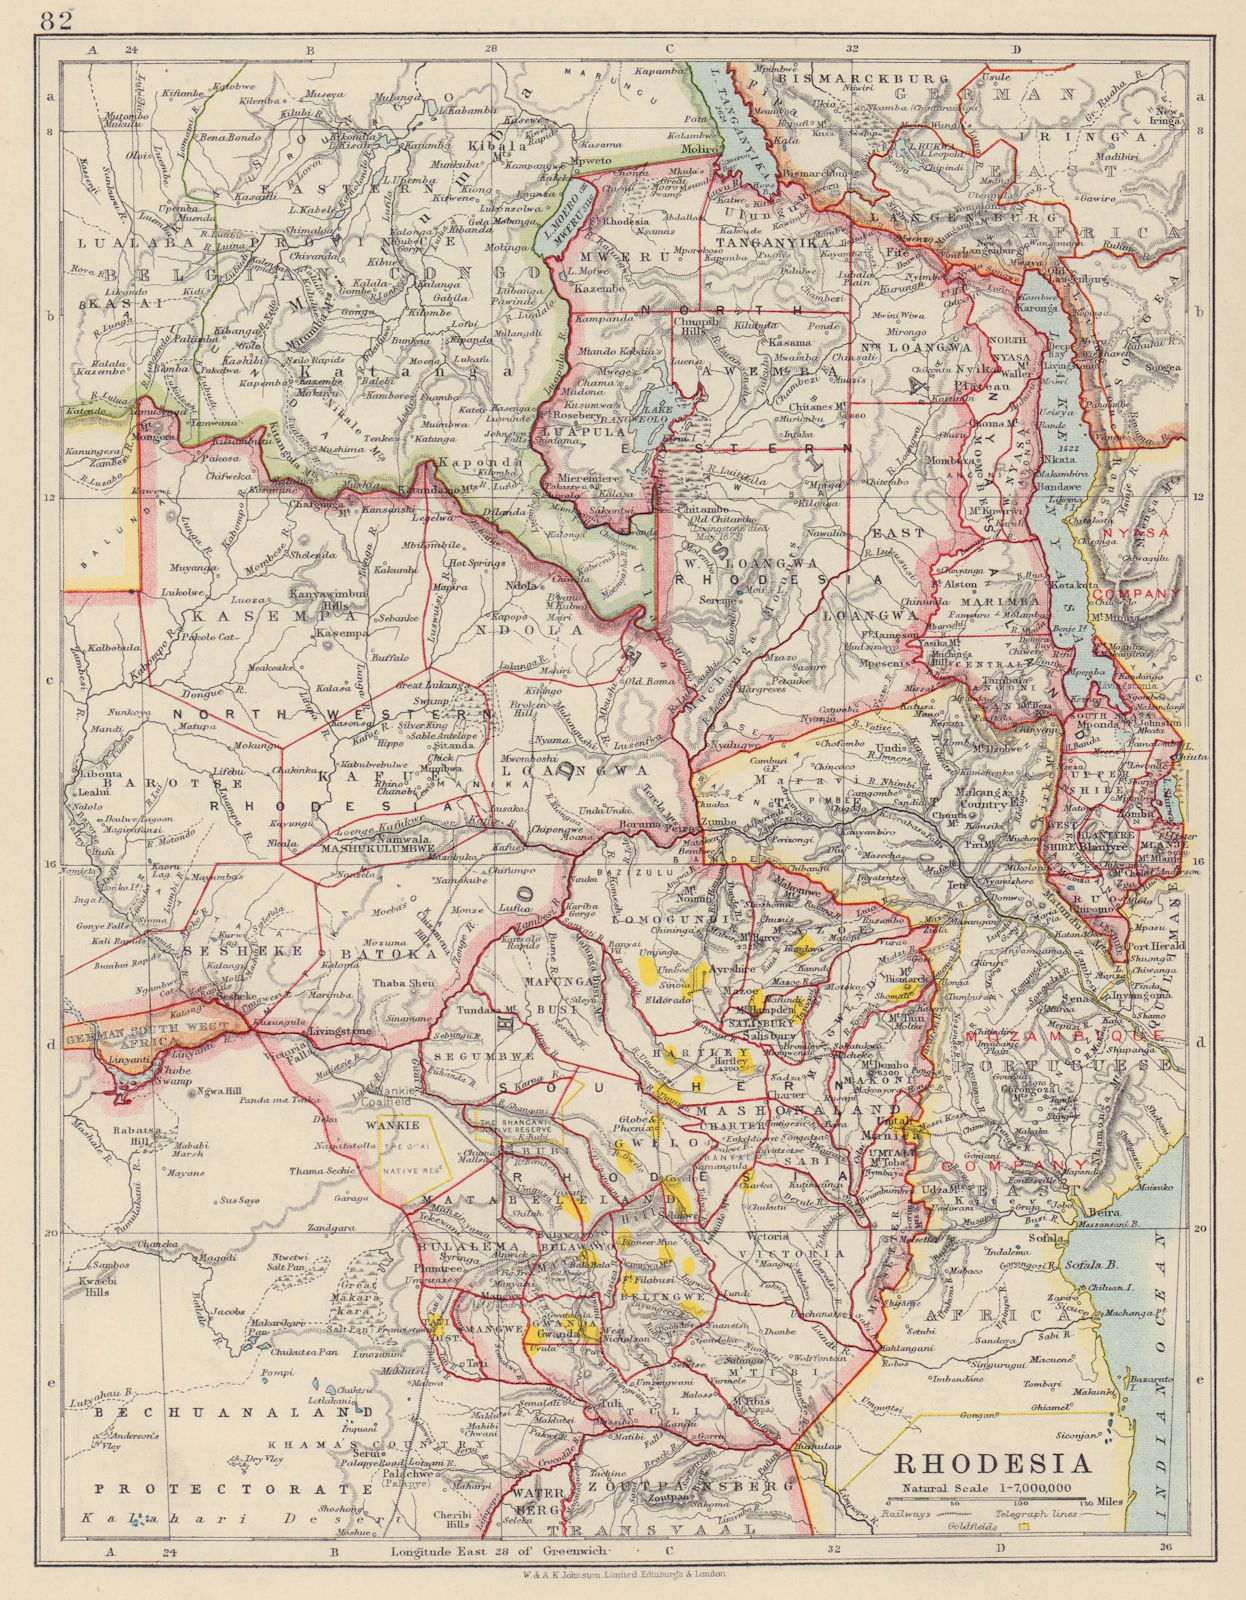 Associate Product RHODESIA. Goldfields (yellow). Zambesia. Zambia Malawi Zimbabwe 1910 map